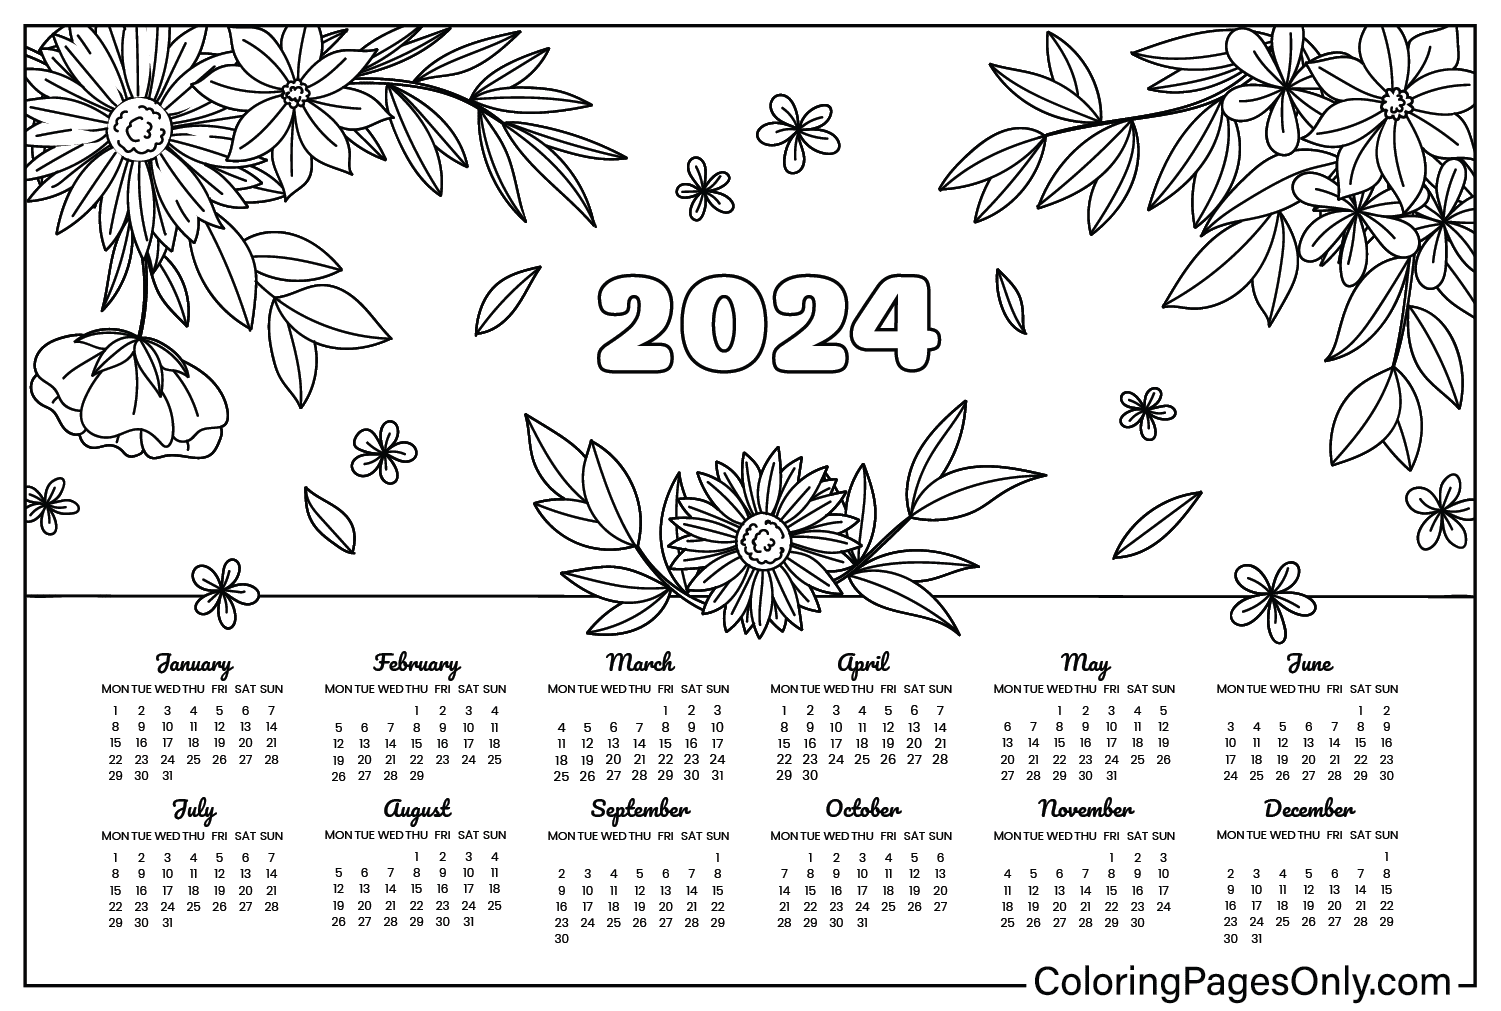 Календарь 2024: изображения для раскрашивания из календаря 2024